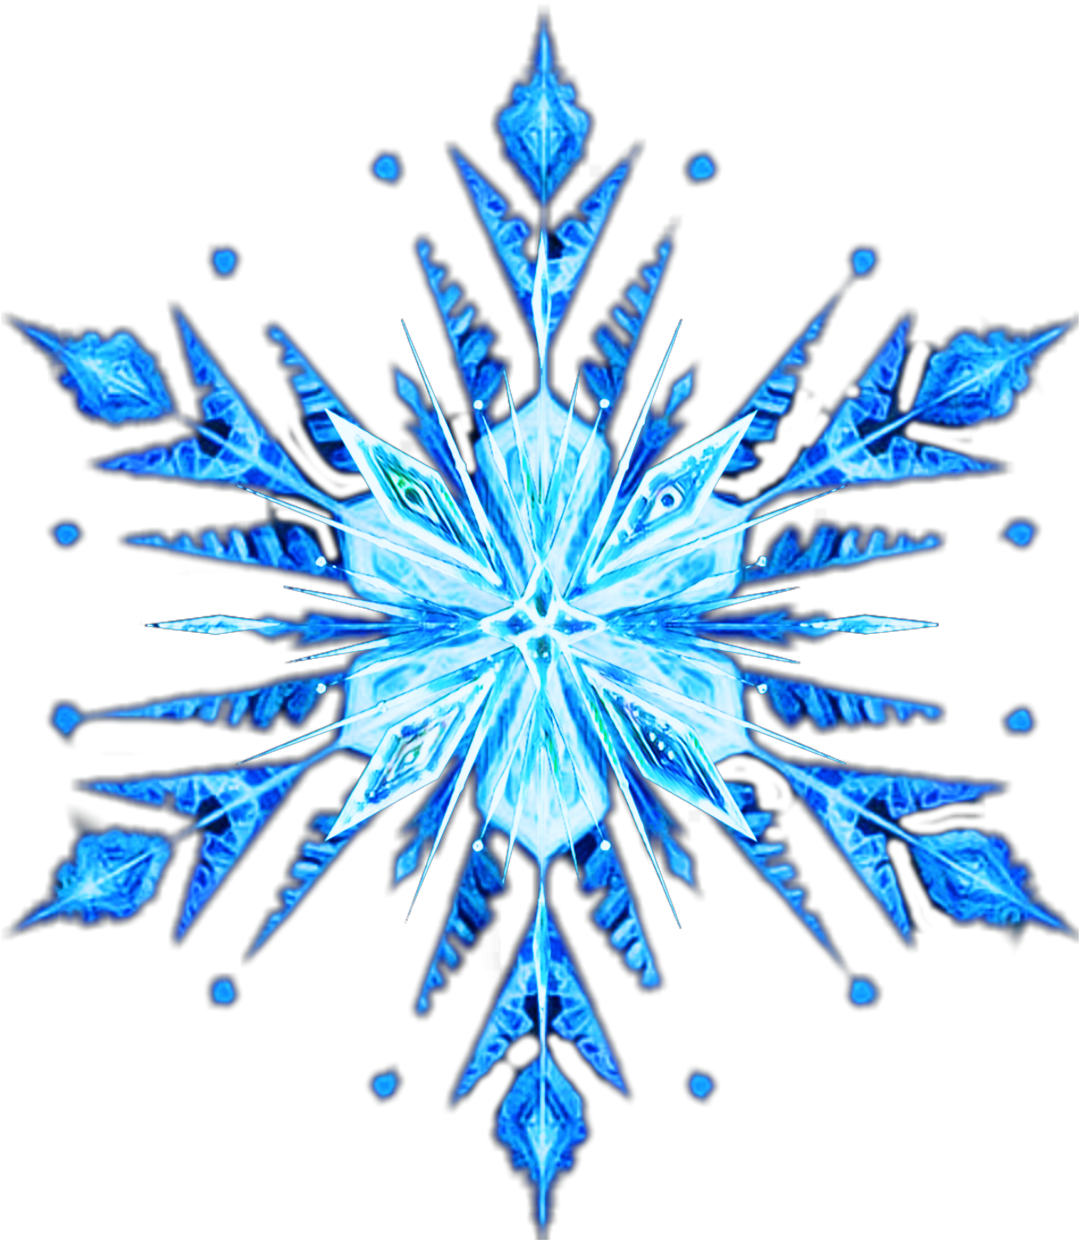 frozen frozen2 snowflake elsa sticker by @luluko_lamperouge.